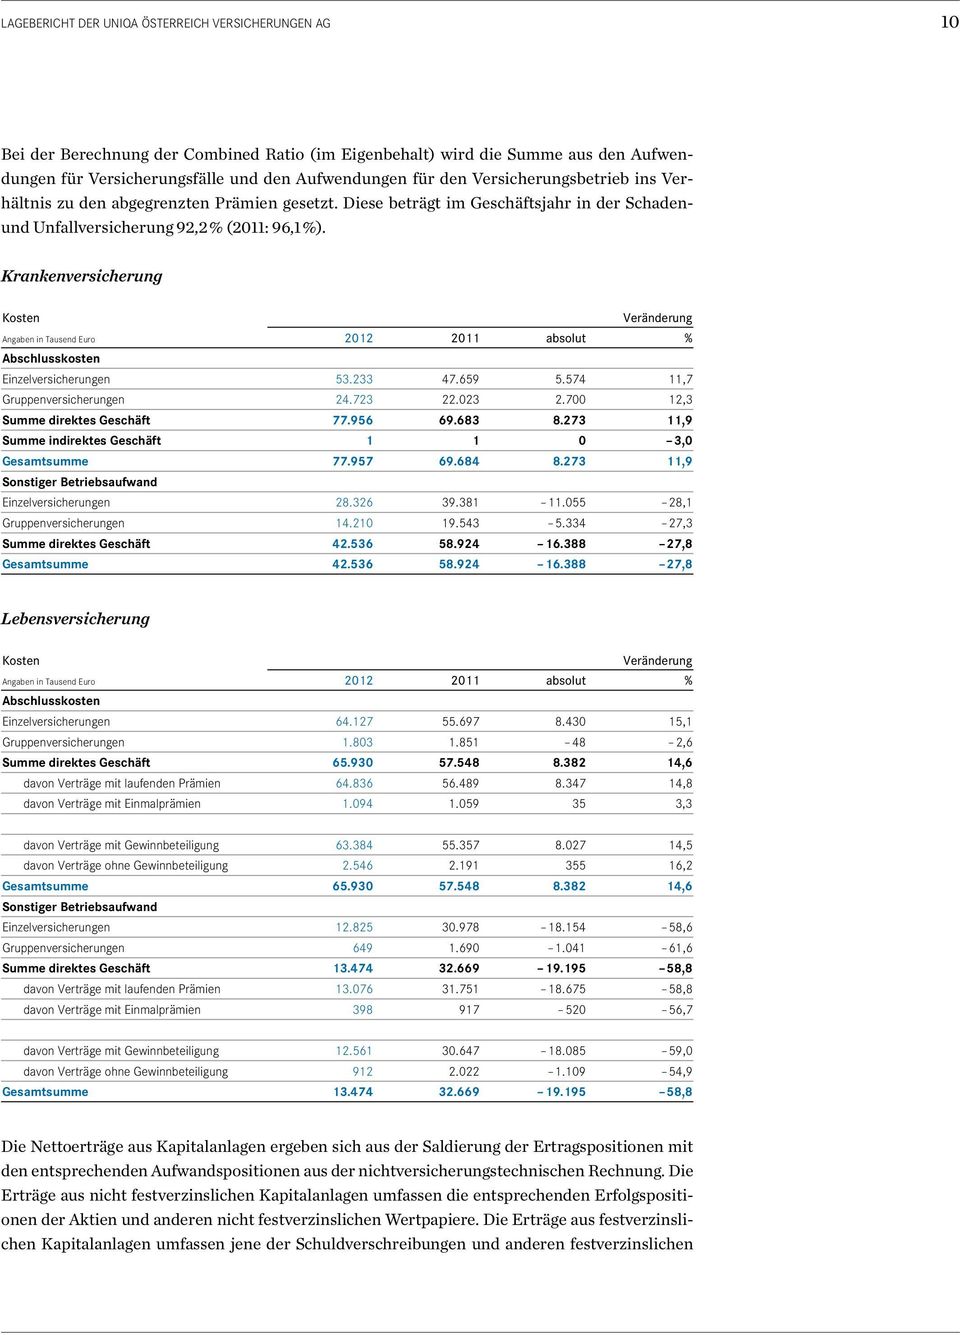 Krankenversicherung Kosten Veränderung Angaben in Tausend Euro 2012 2011 absolut % Abschlusskosten Einzelversicherungen 53.233 47.659 5.574 11,7 Gruppenversicherungen 24.723 22.023 2.